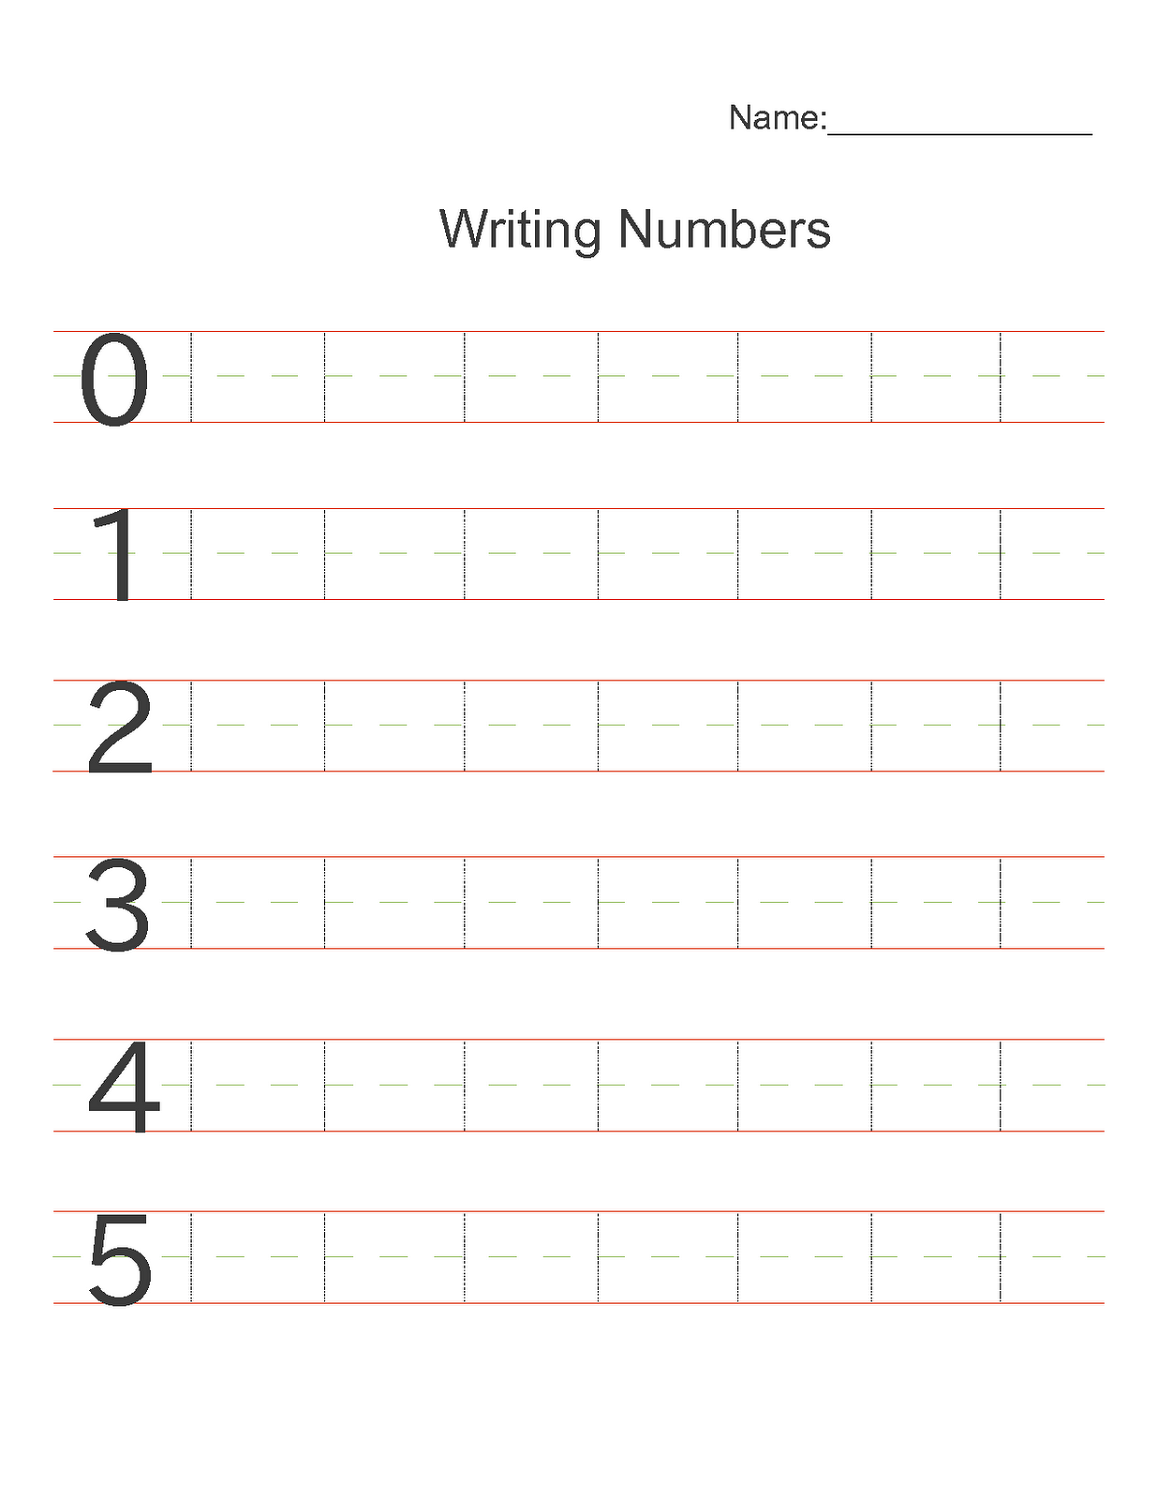 practice-writing-numbers-worksheet-free-kindergarten-math-worksheet-for-kids